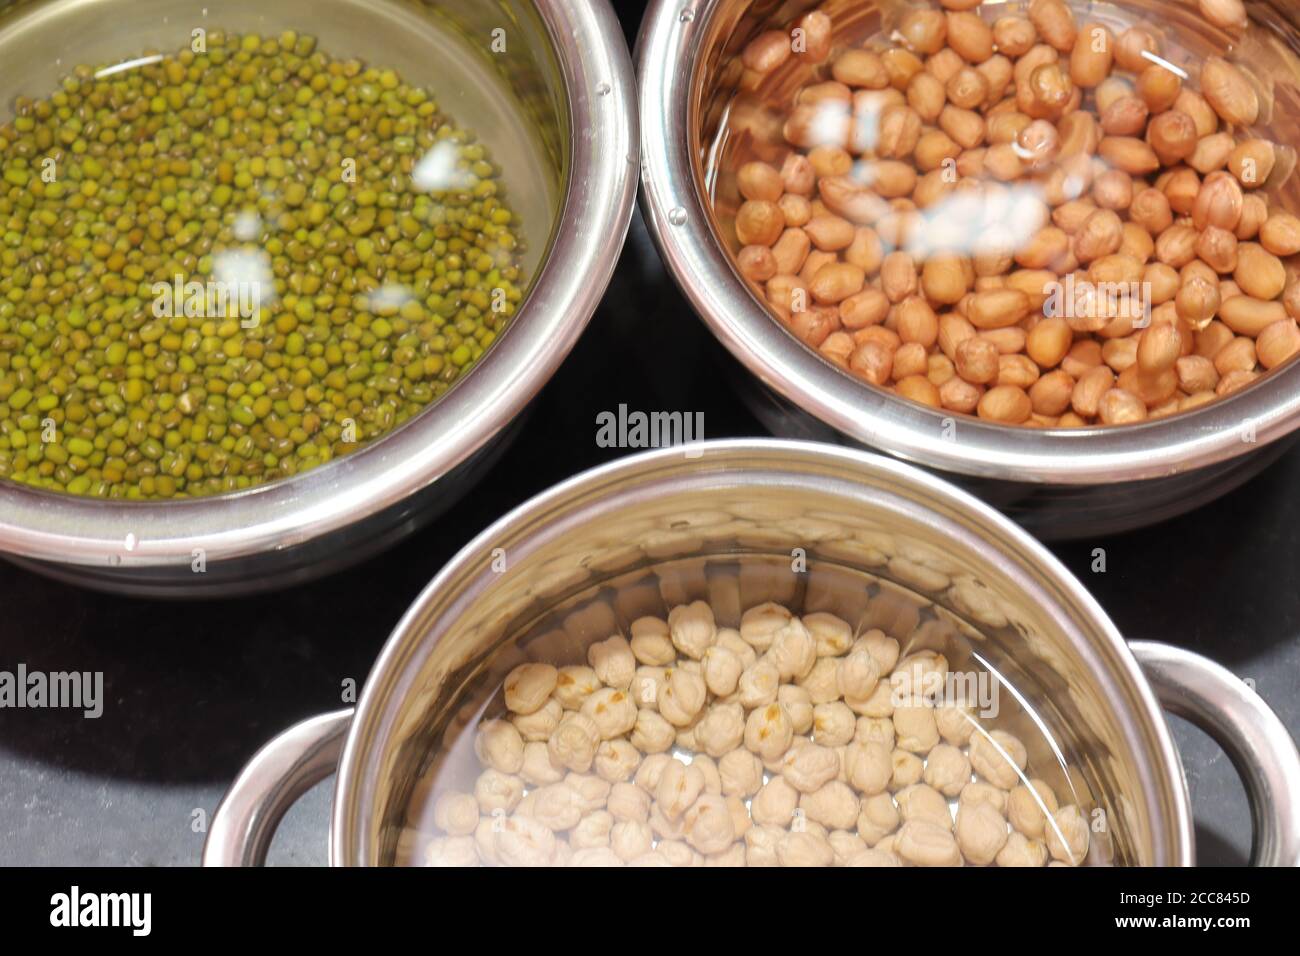 Frische grüne Gramm Bohnen und Erdnüsse mit channa auf schwarz Hintergrund Stockfoto